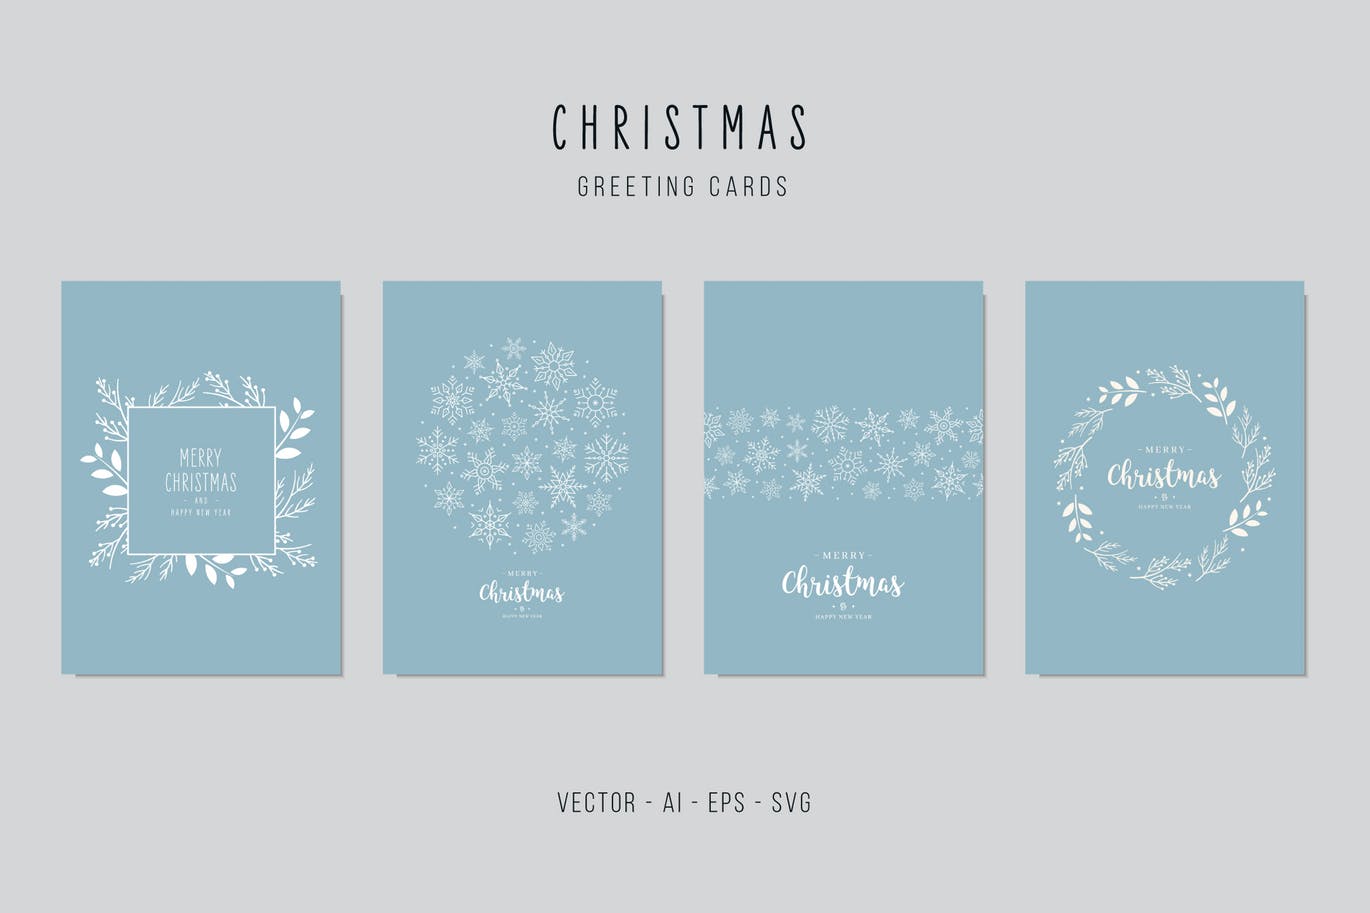 雪花&植物手绘图案圣诞节贺卡矢量设计模板集v2 Christmas Greeting Vector Card Set插图